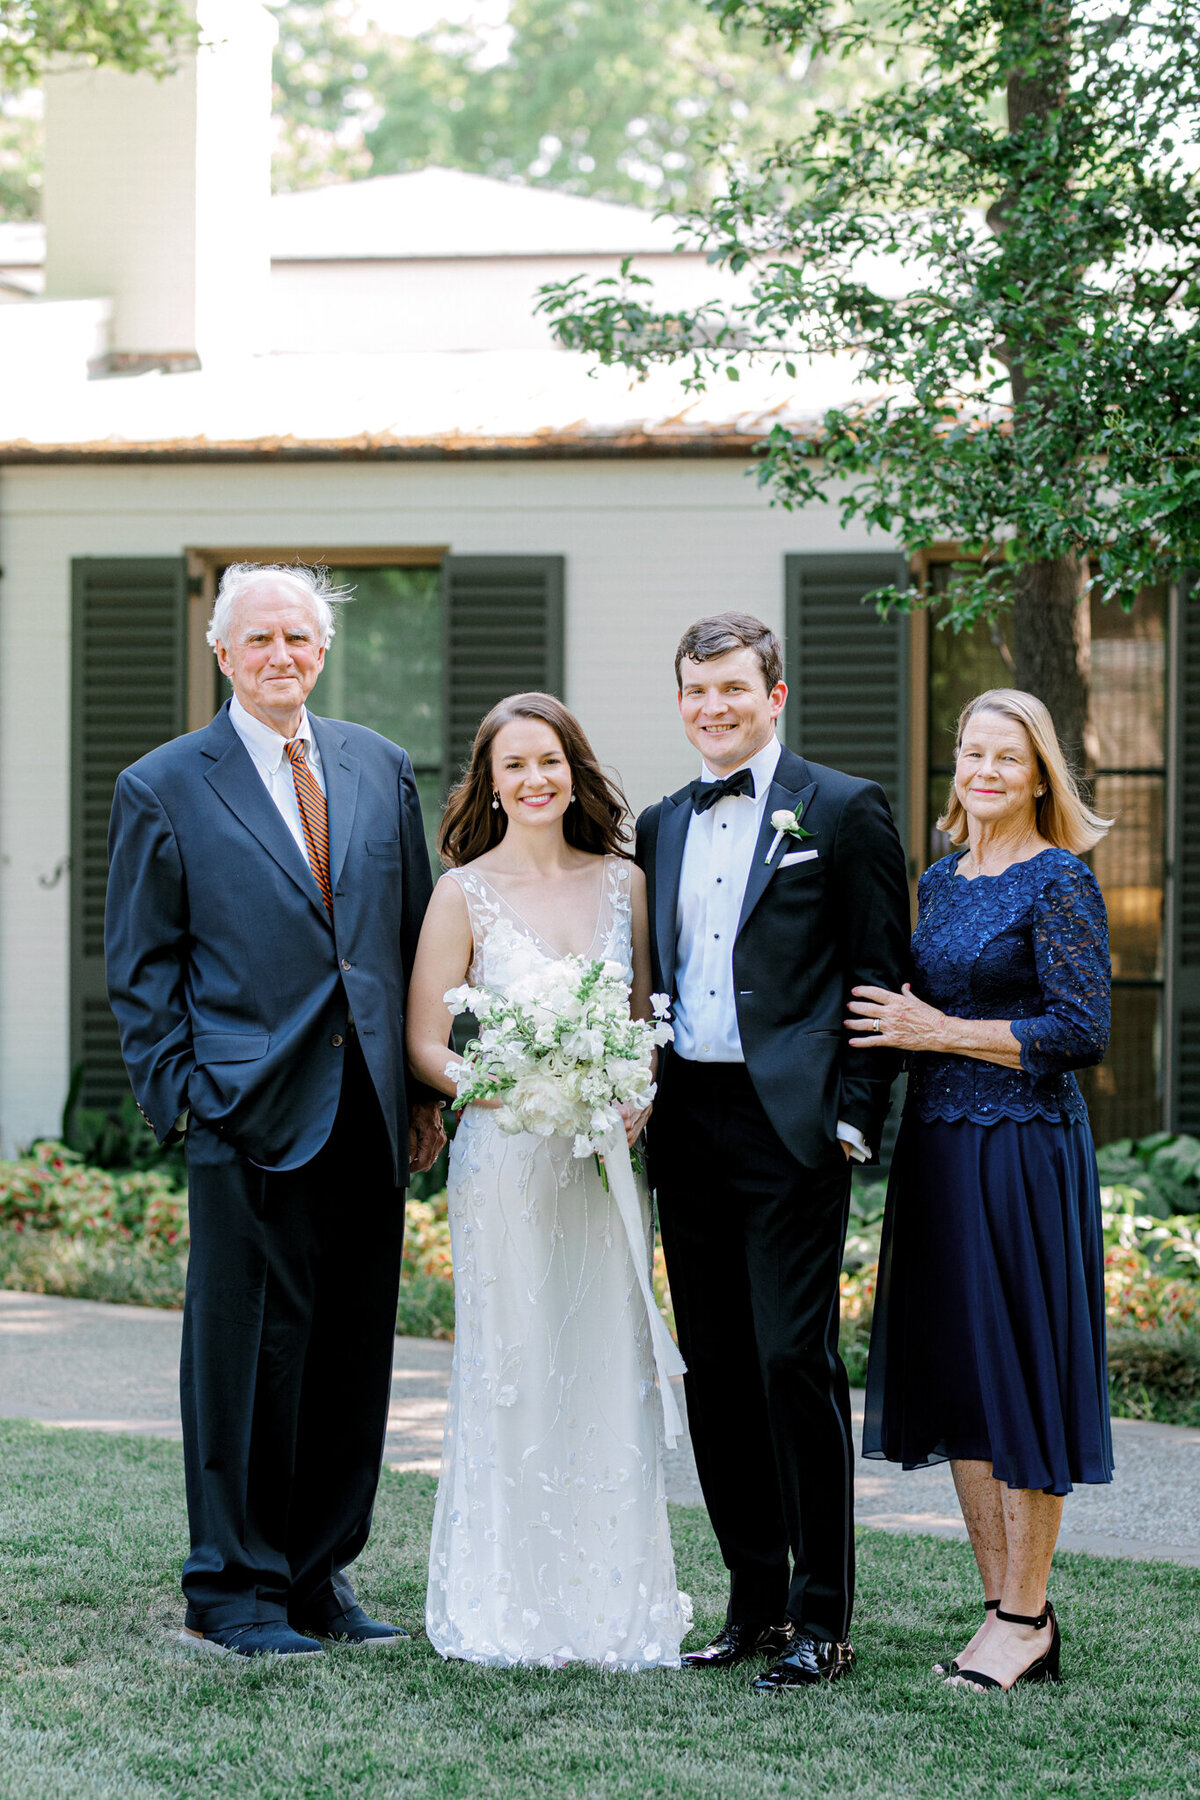 Gena & Matt's Wedding at the Dallas Arboretum | Dallas Wedding Photographer | Sami Kathryn Photography-126